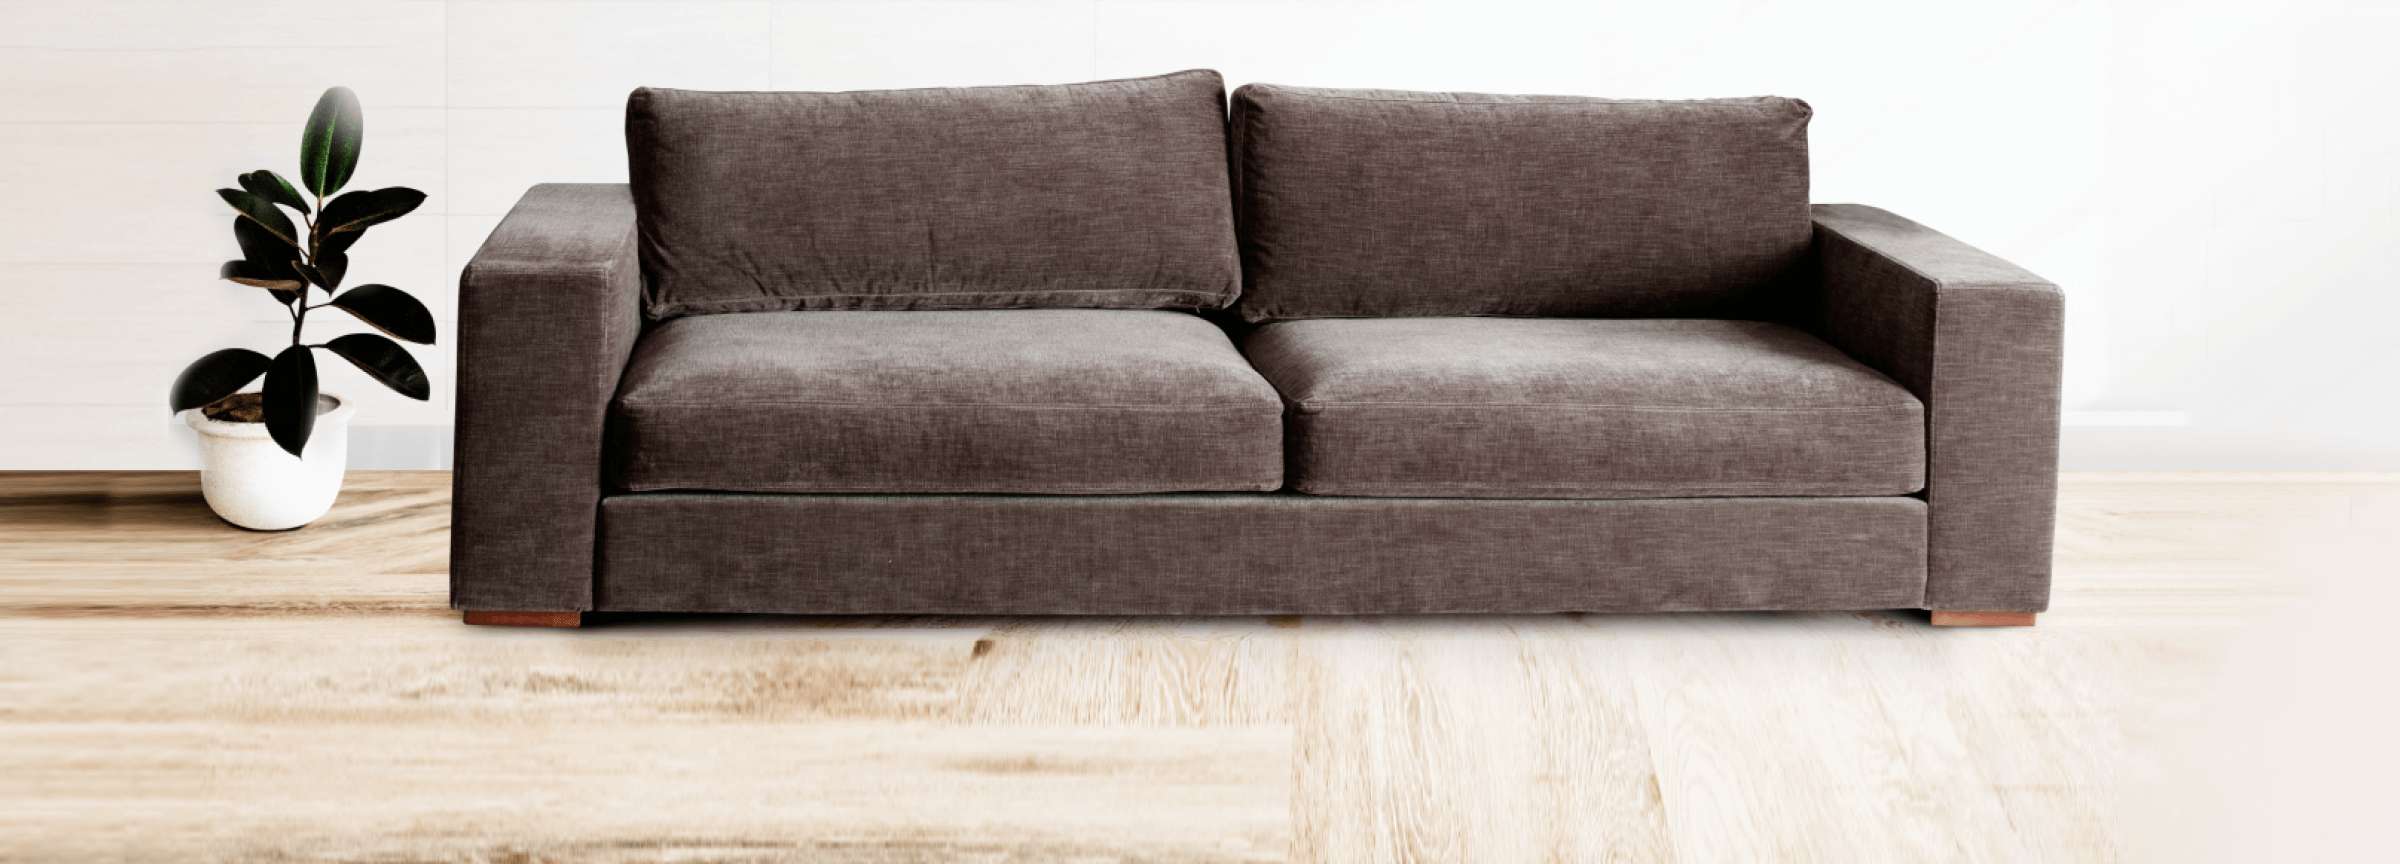 sofa-padding